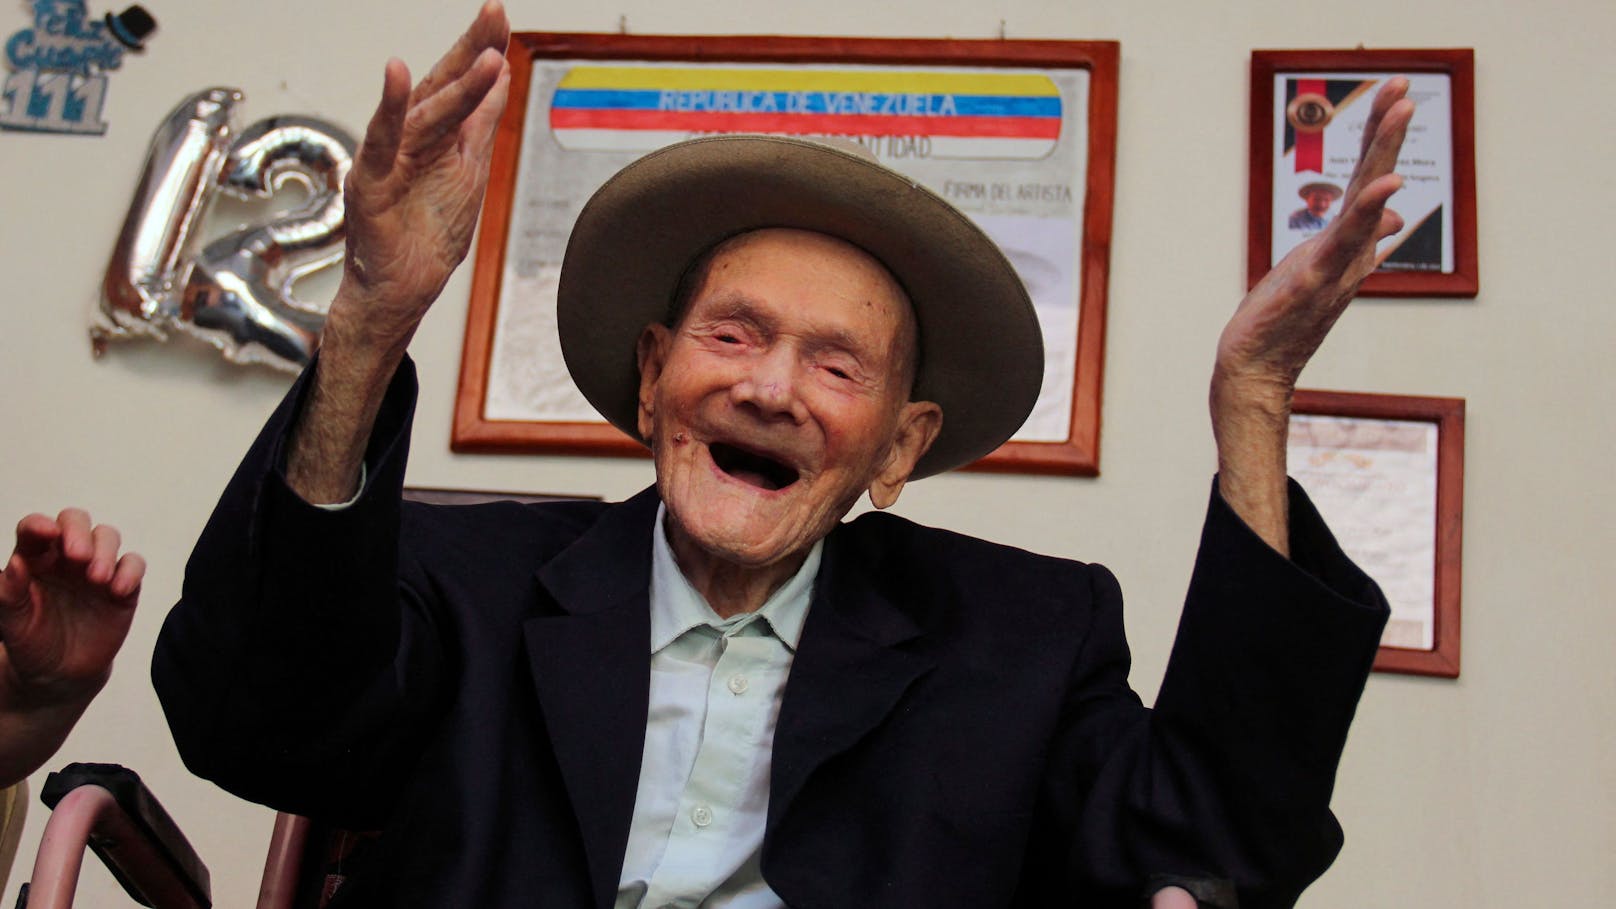 Ältester Mann der Welt mit 114 Jahren gestorben